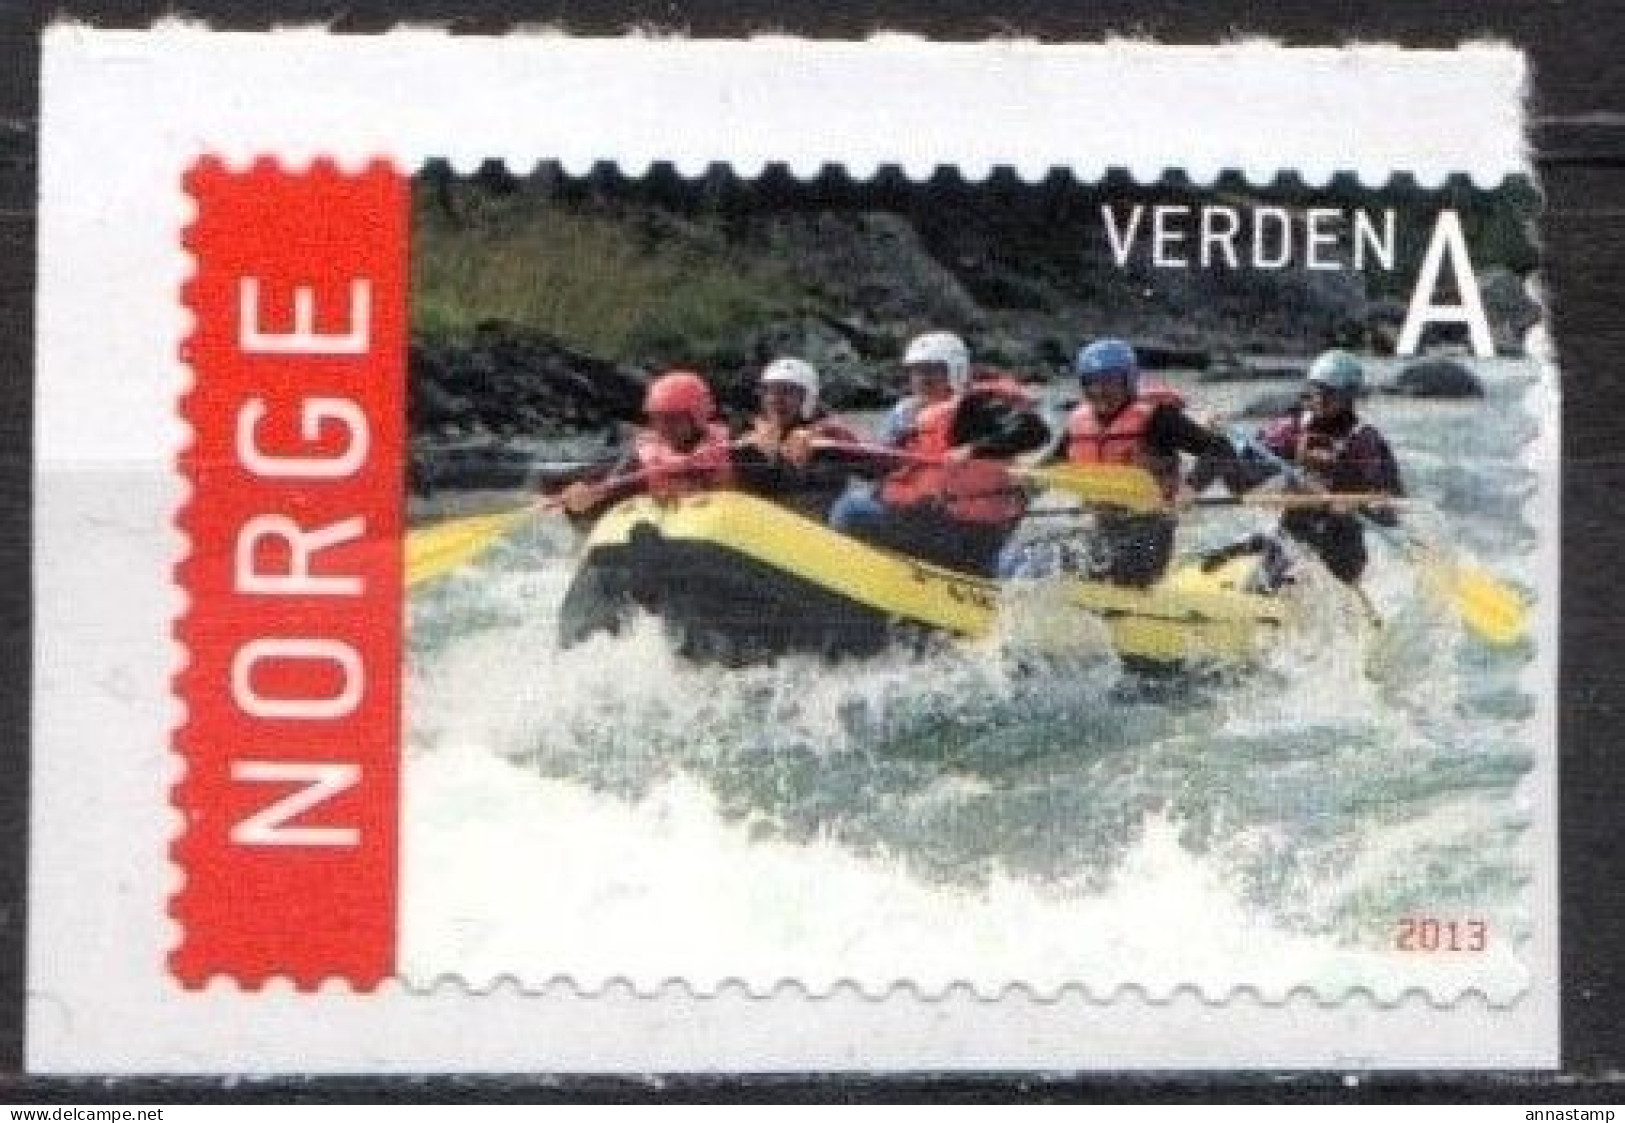 Norway MNH Stamp - Rafting